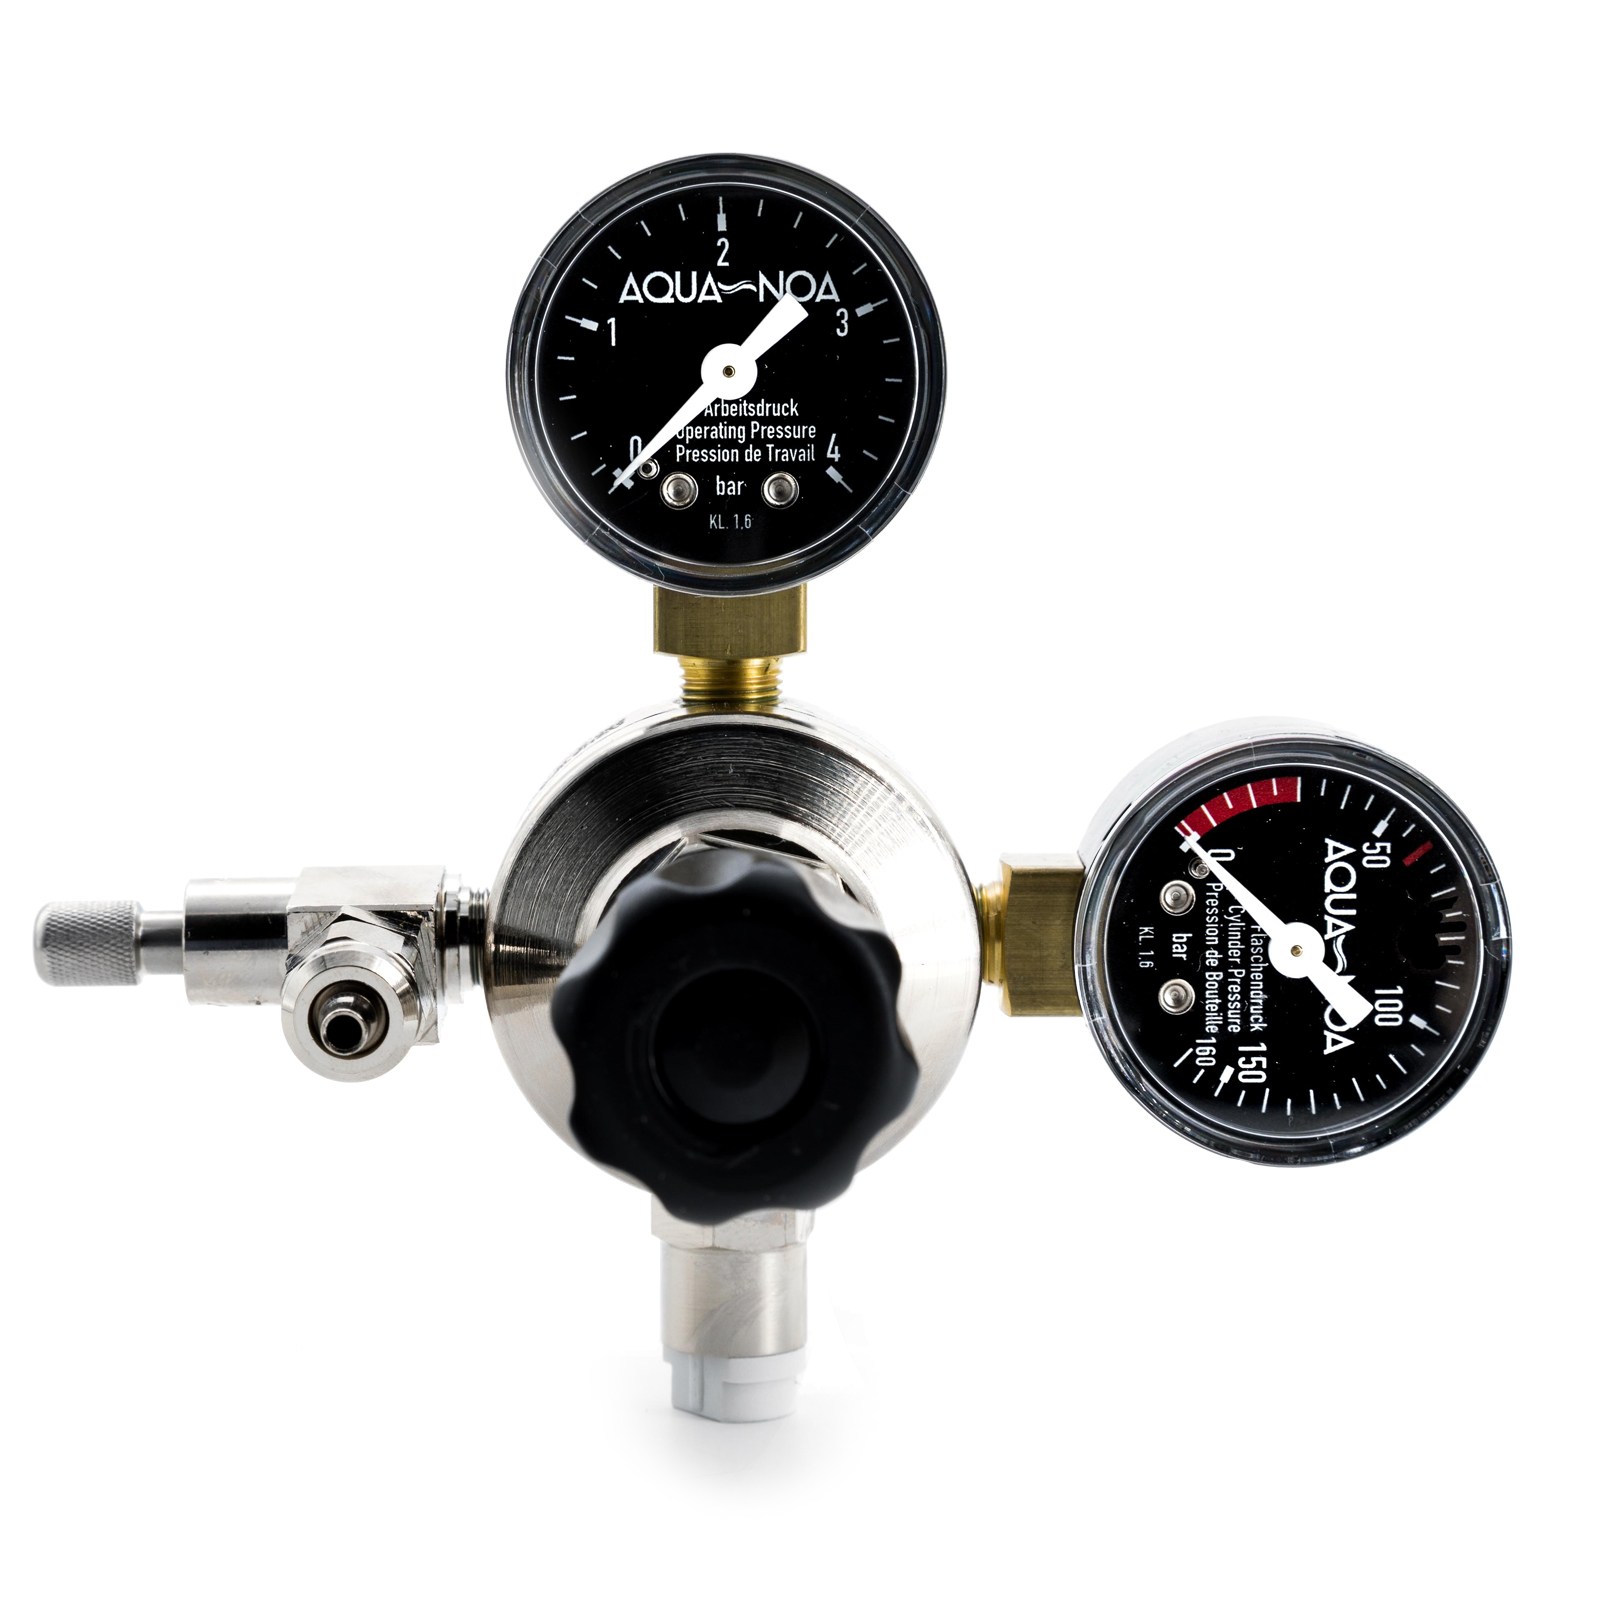 AQUA-NOA CO₂ pressure regulator Profi M1